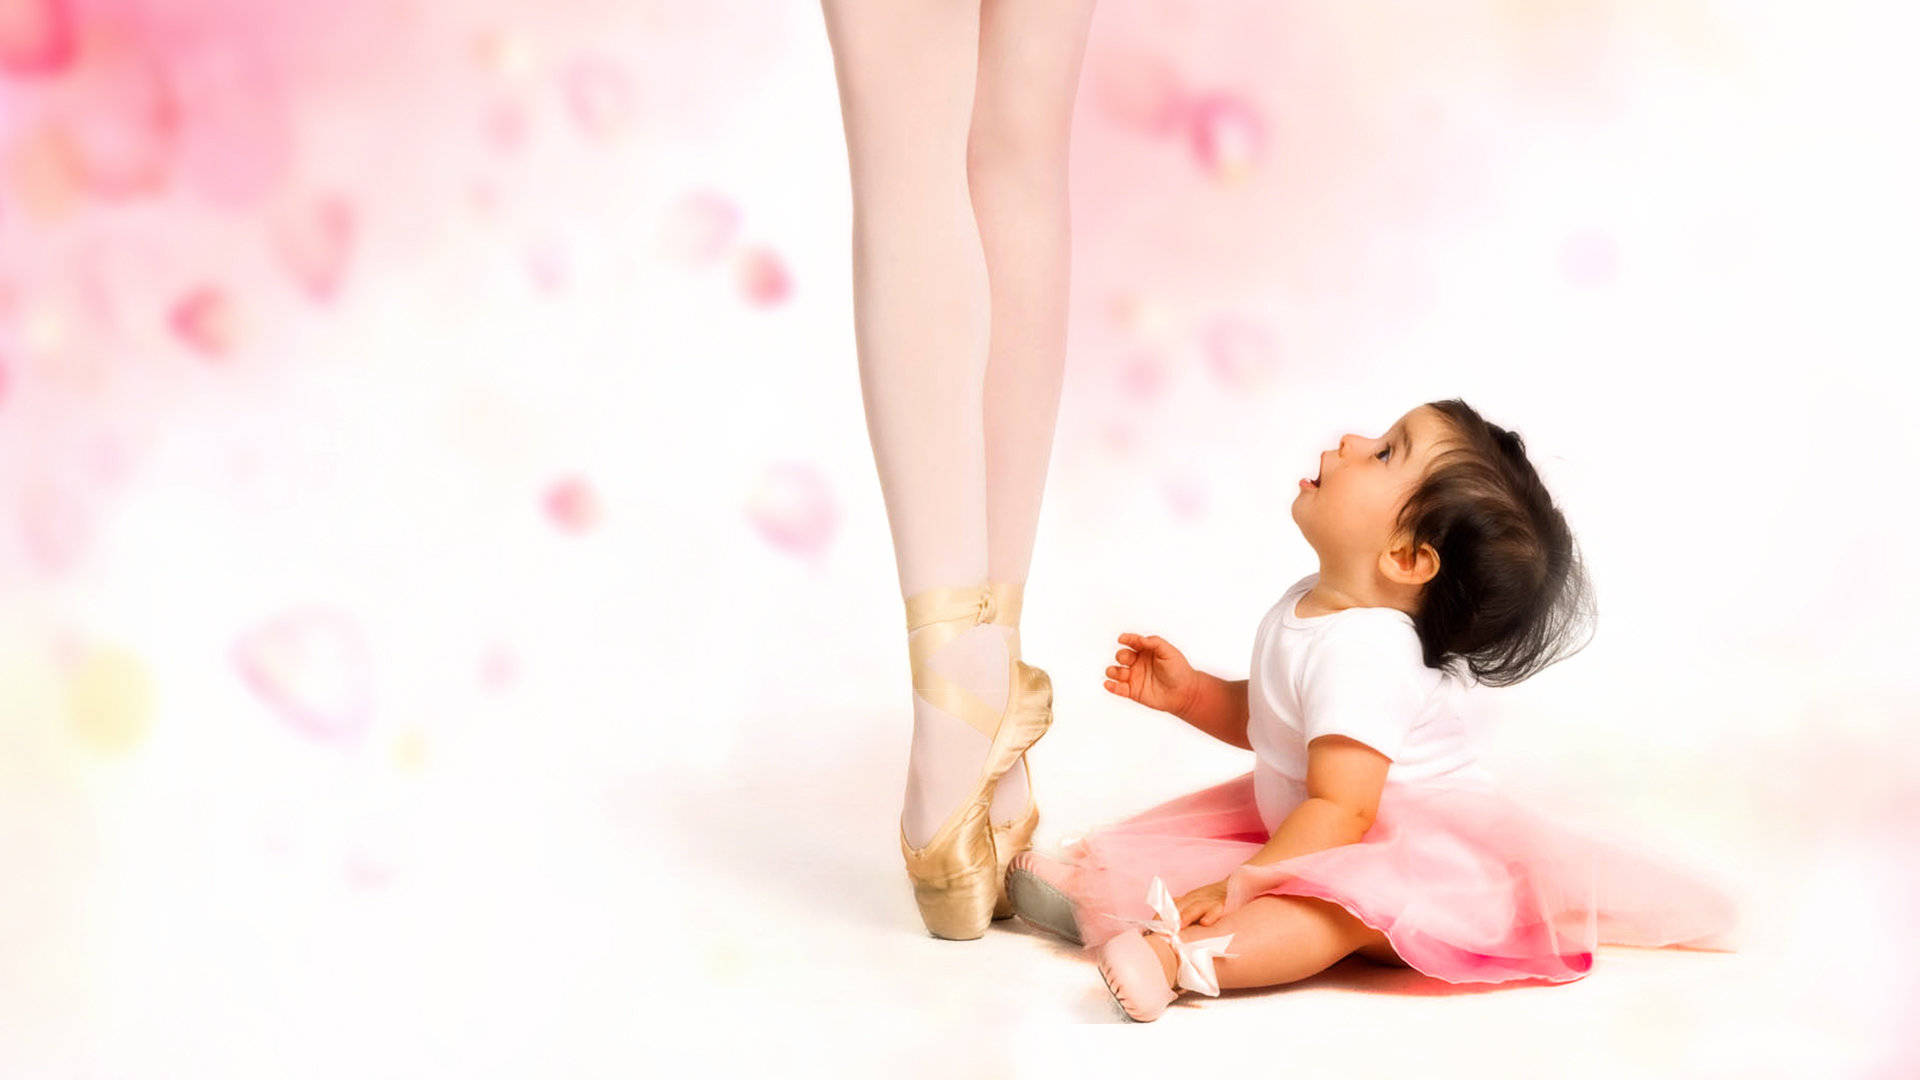 Ballet Dancer And Baby Wallpaper